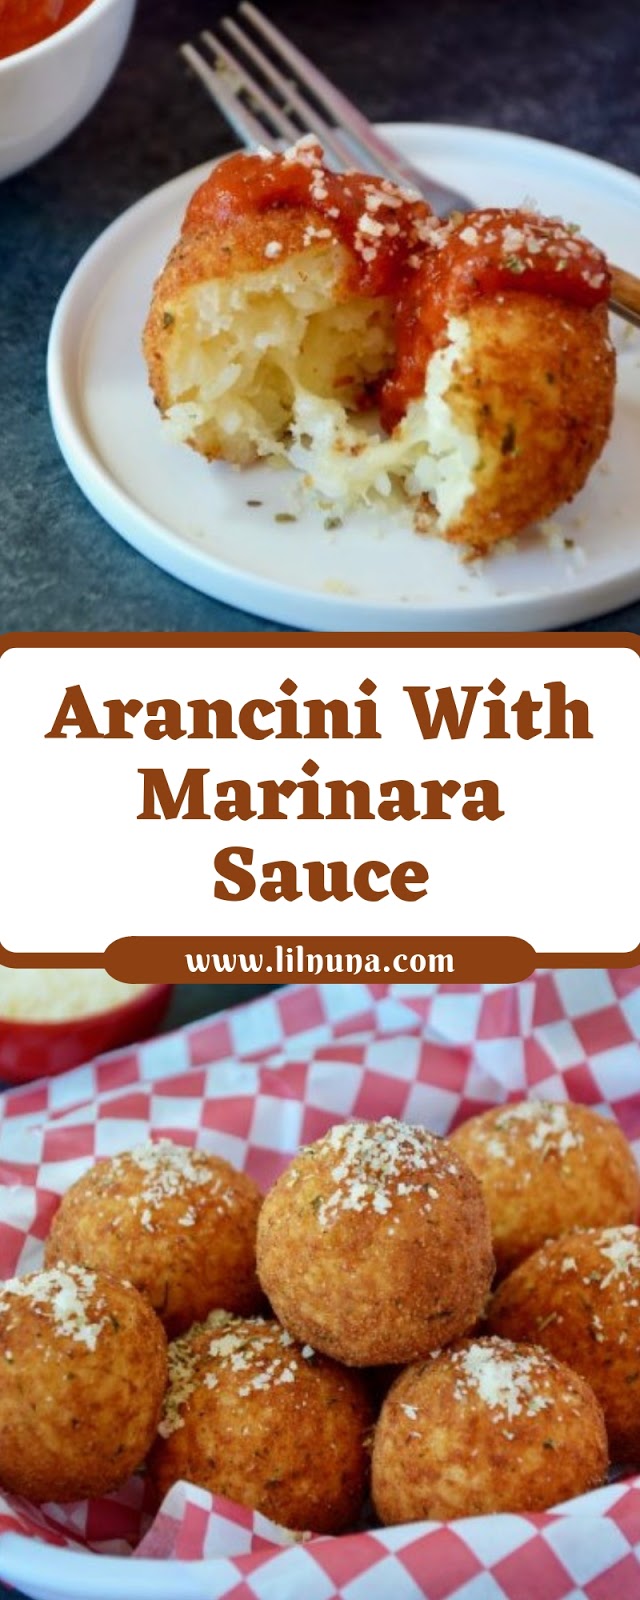 Arancini With Marinara Sauce